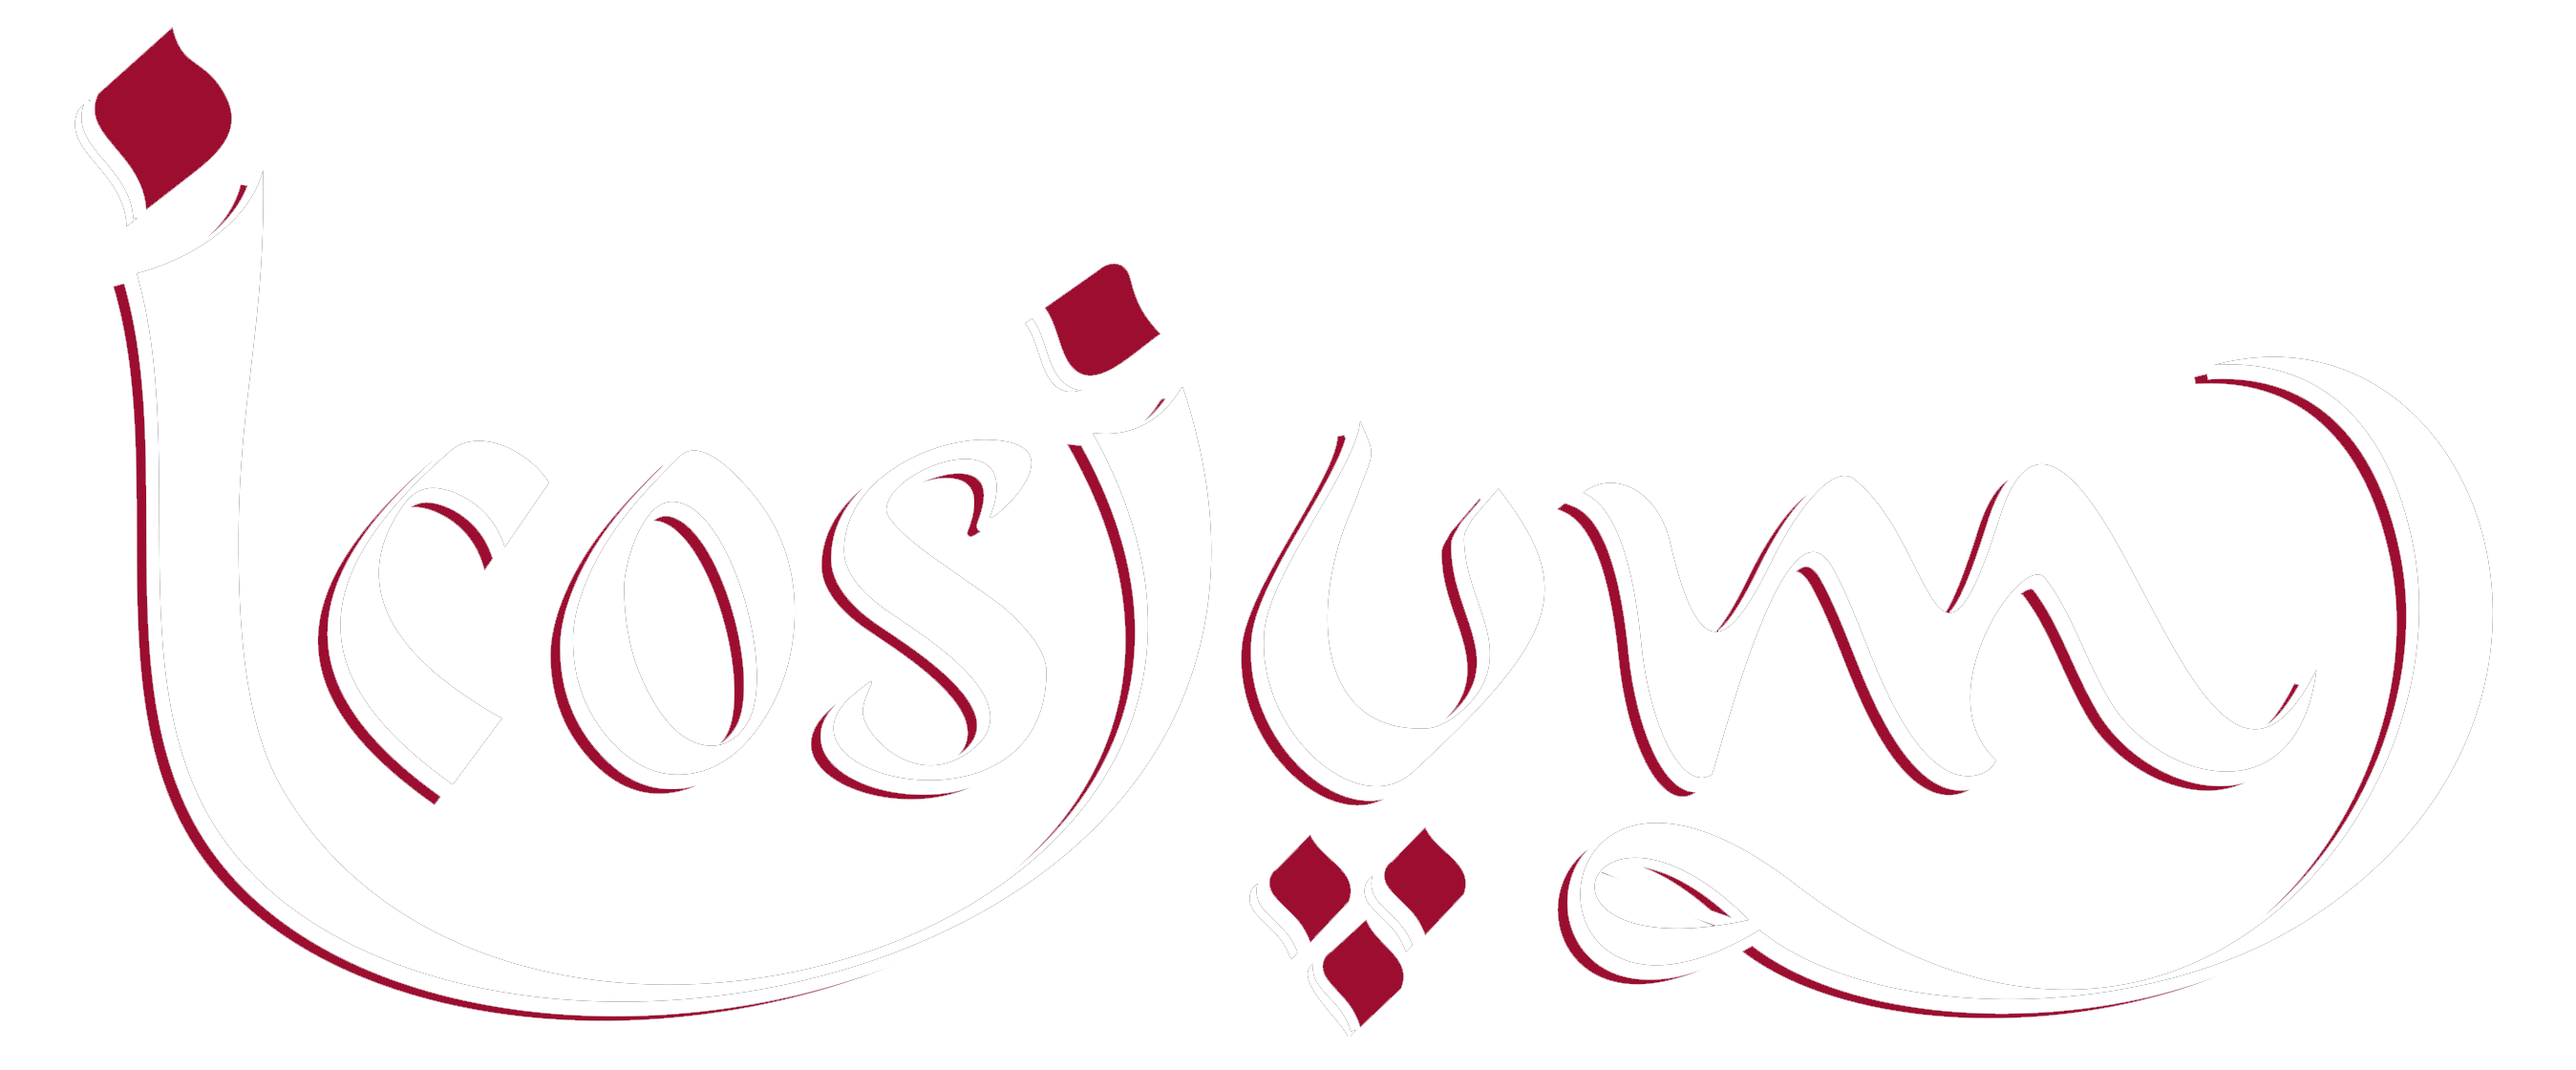 Icosium - restaurant algérien à Paris depuis 1988